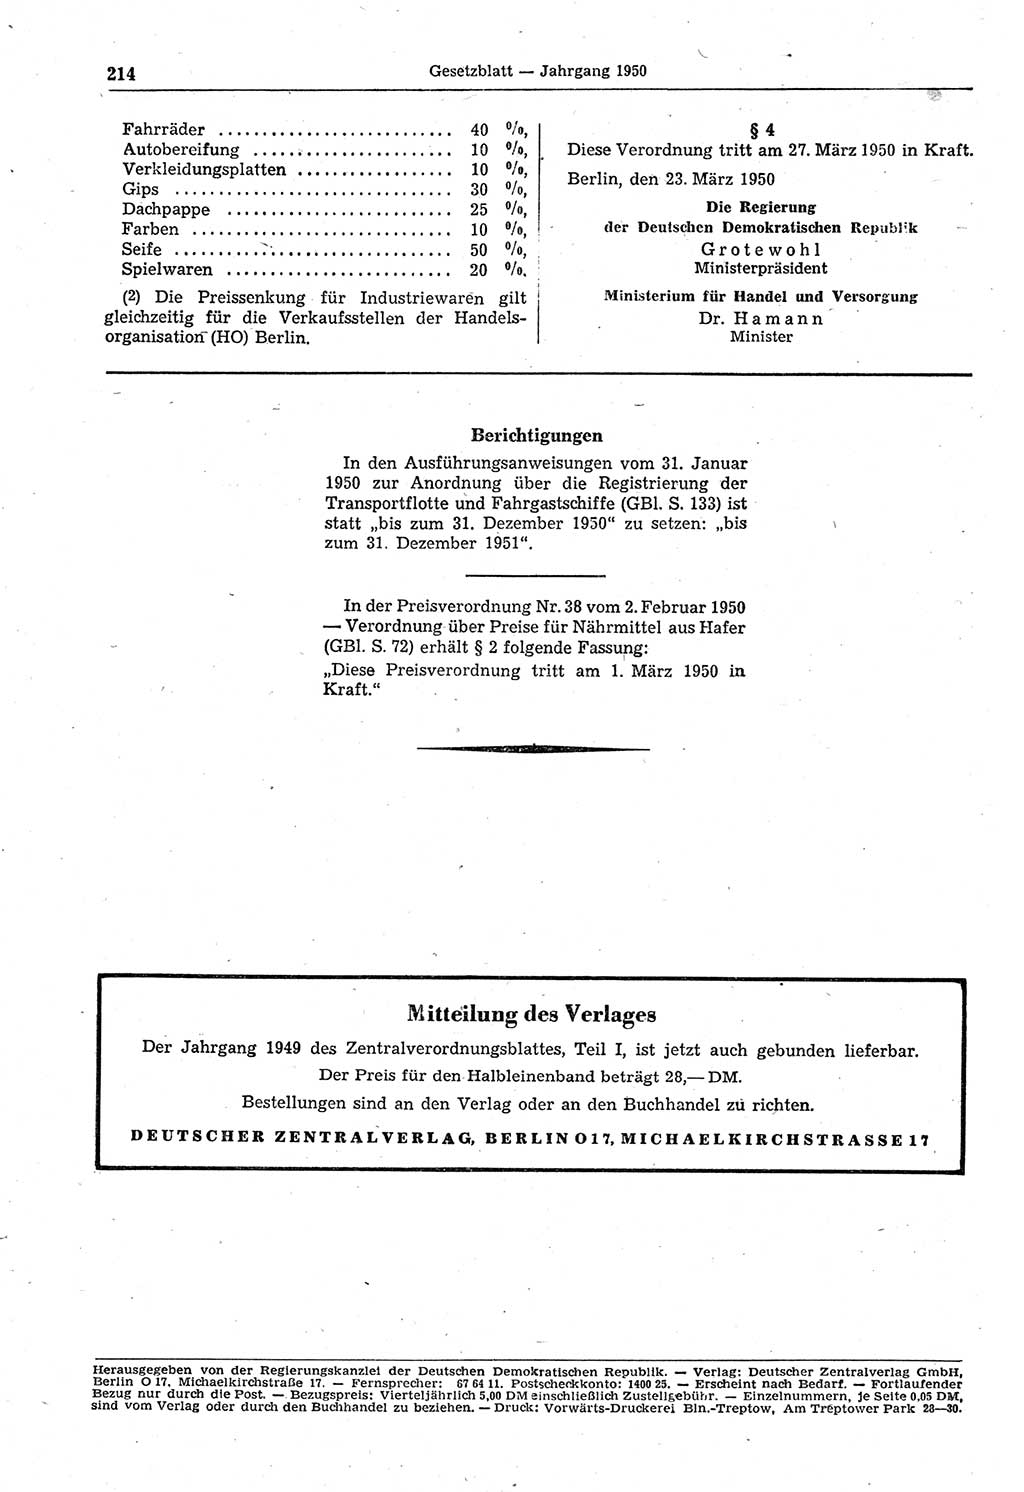 Gesetzblatt (GBl.) der Deutschen Demokratischen Republik (DDR) 1950, Seite 214 (GBl. DDR 1950, S. 214)